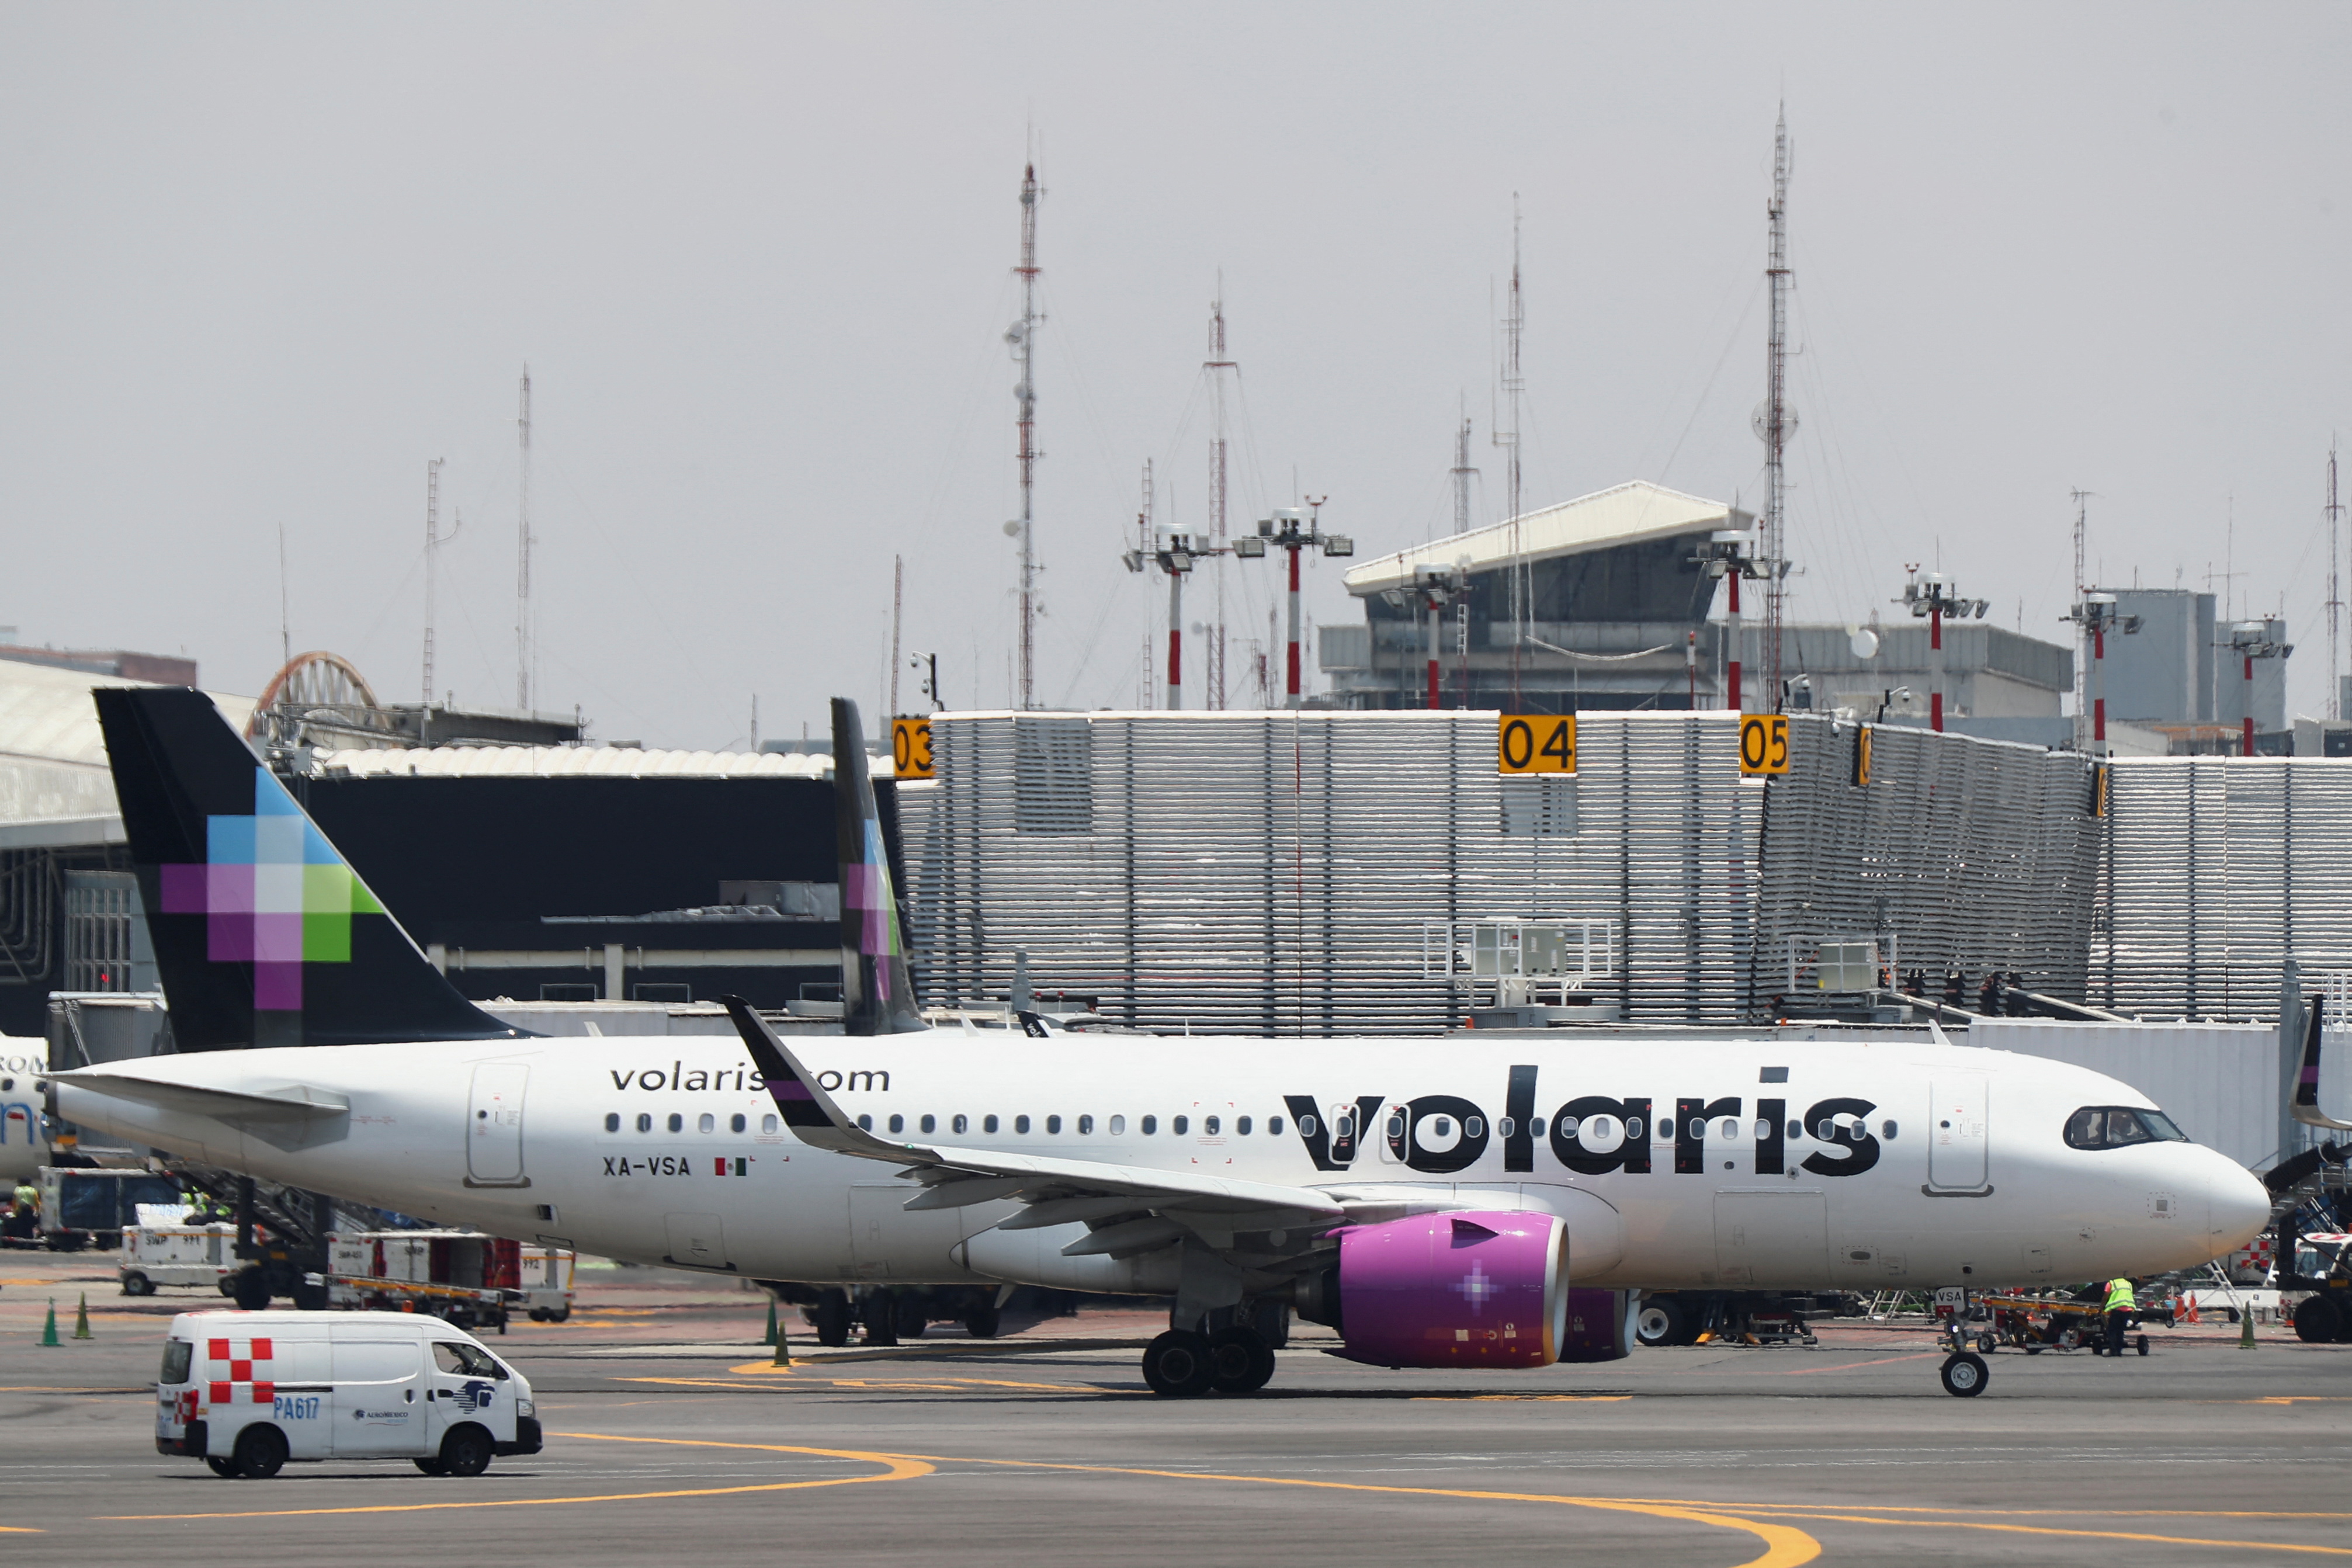 La aerolínea Volaris opera en el AIFA y ofrece vuelos a tres destinos. REUTERS/Edgard Garrido